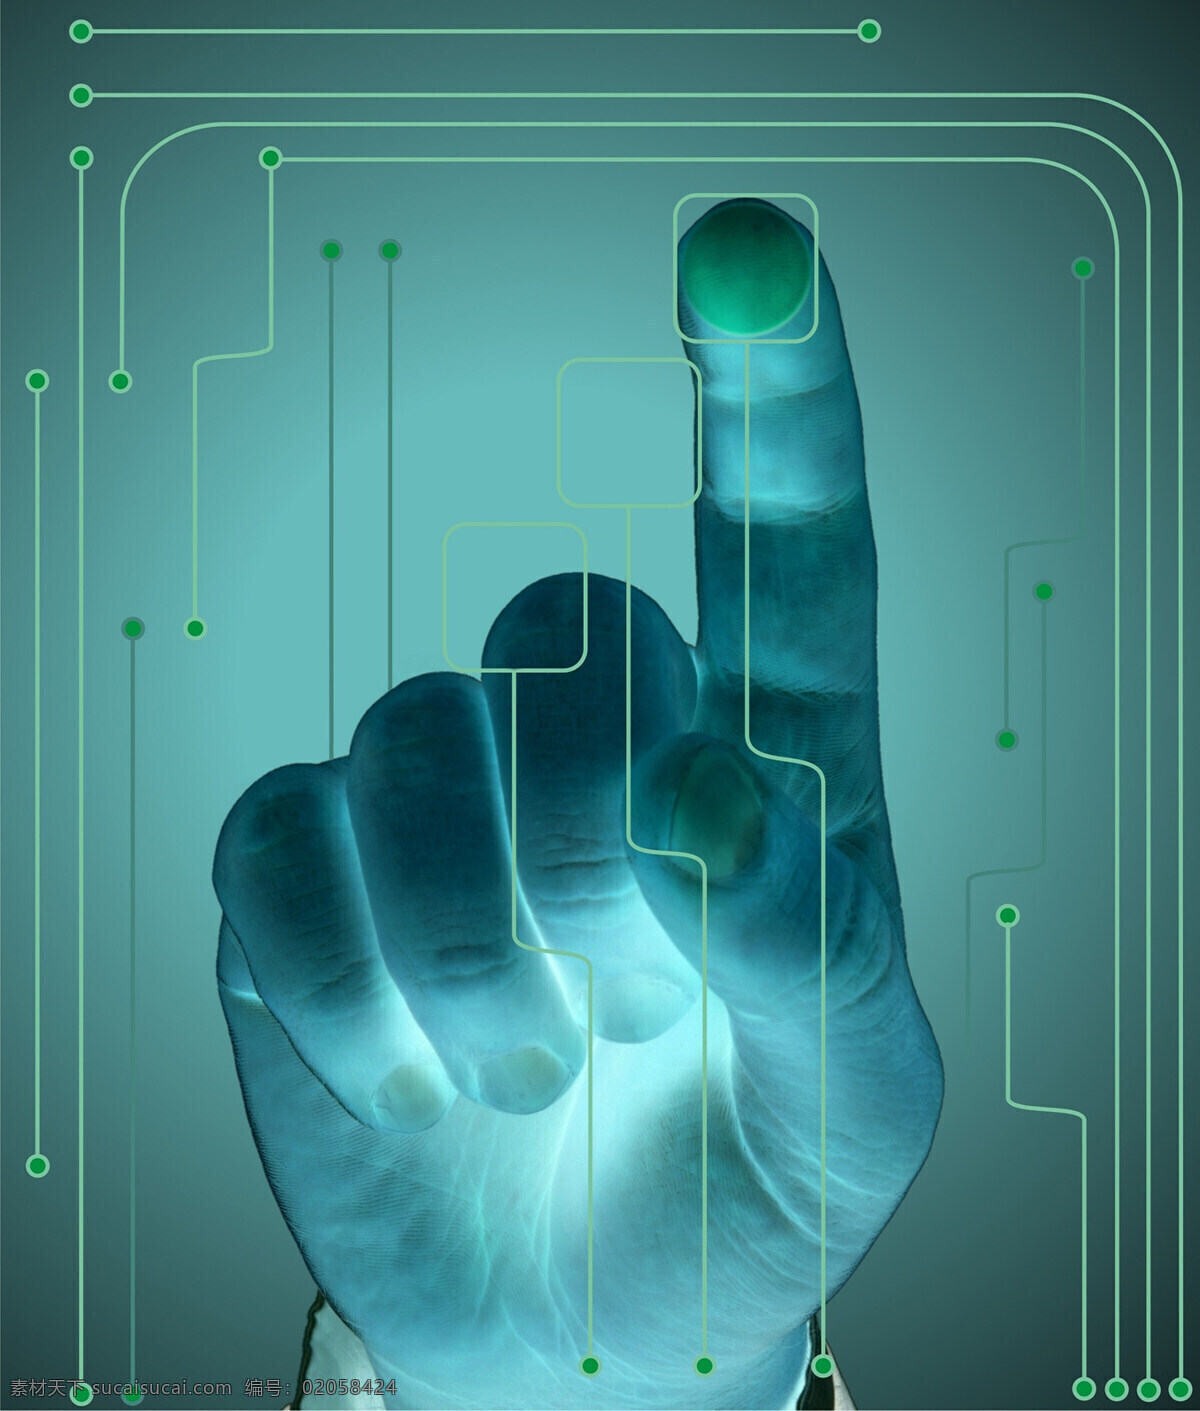 触摸未来 互动 交互 智能 人工智能 vr 虚拟现实 触摸 手 手触摸 点 指点 触摸屏幕 科技 未来科技 黑客 骇客 触碰未来 未来 科幻